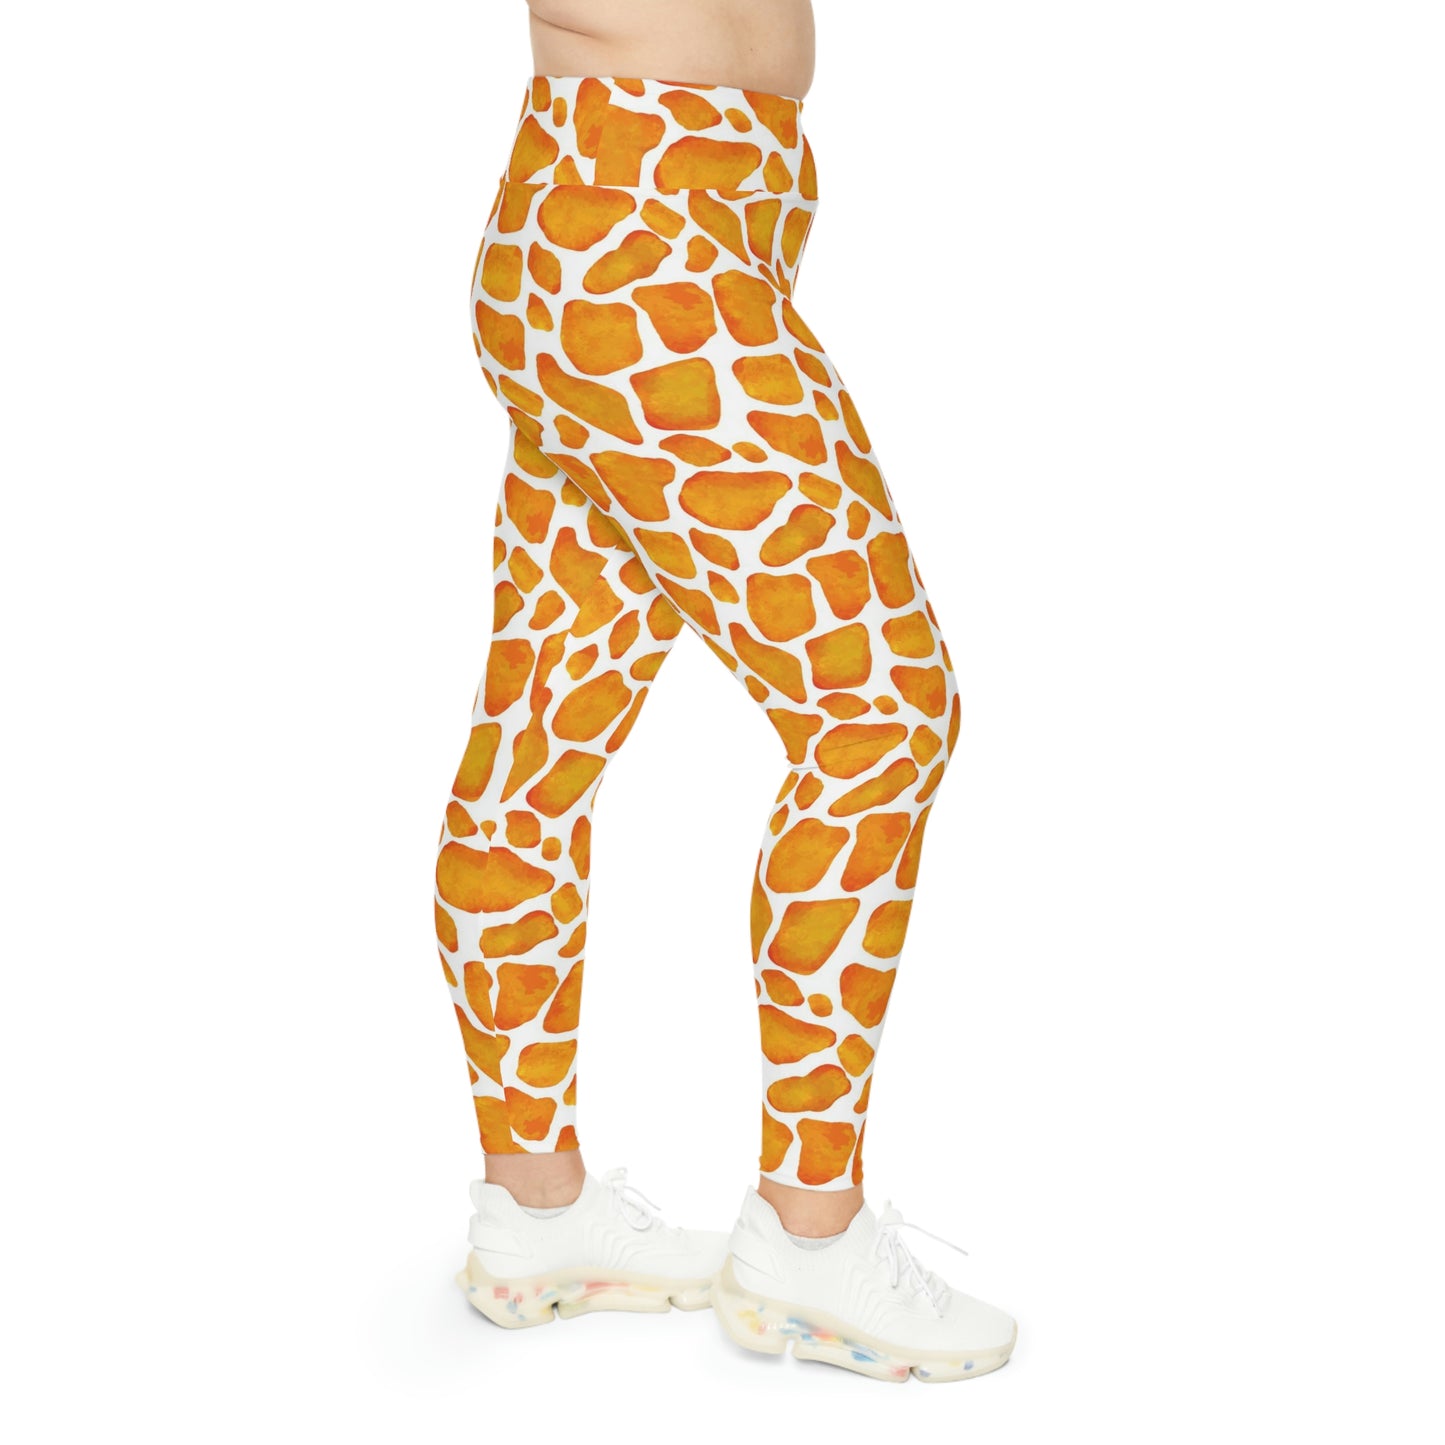 Giraffe skin Plus Size Leggings,Giraffe Leggings, Giraffe Print, African Safari Plus Size Leggings